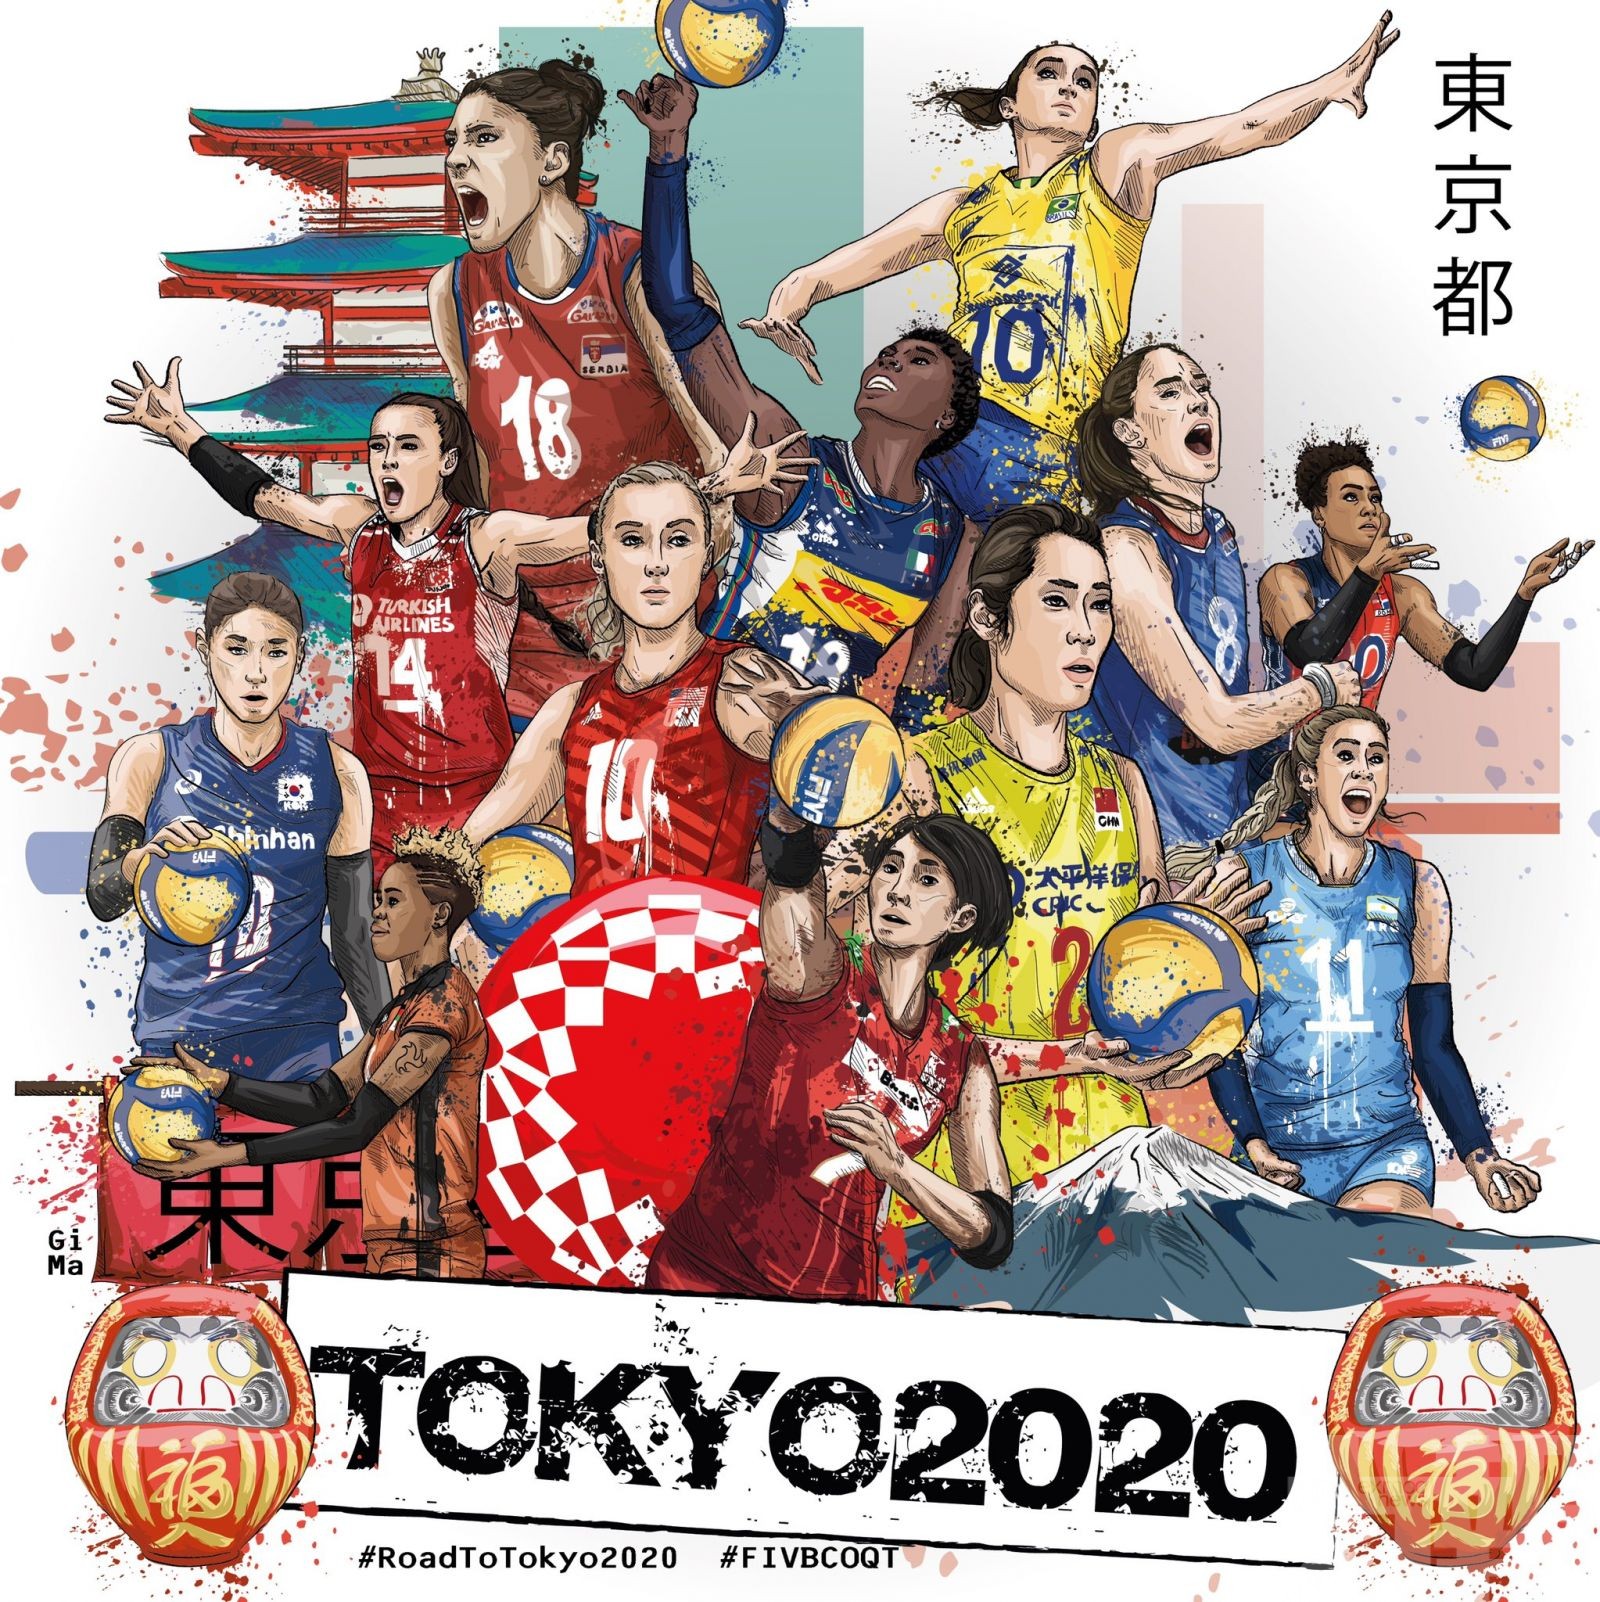 7月26日踏出衛冕之路第一步 中國女排東京奧運首戰硬撼土耳其 - 澳門力報官網